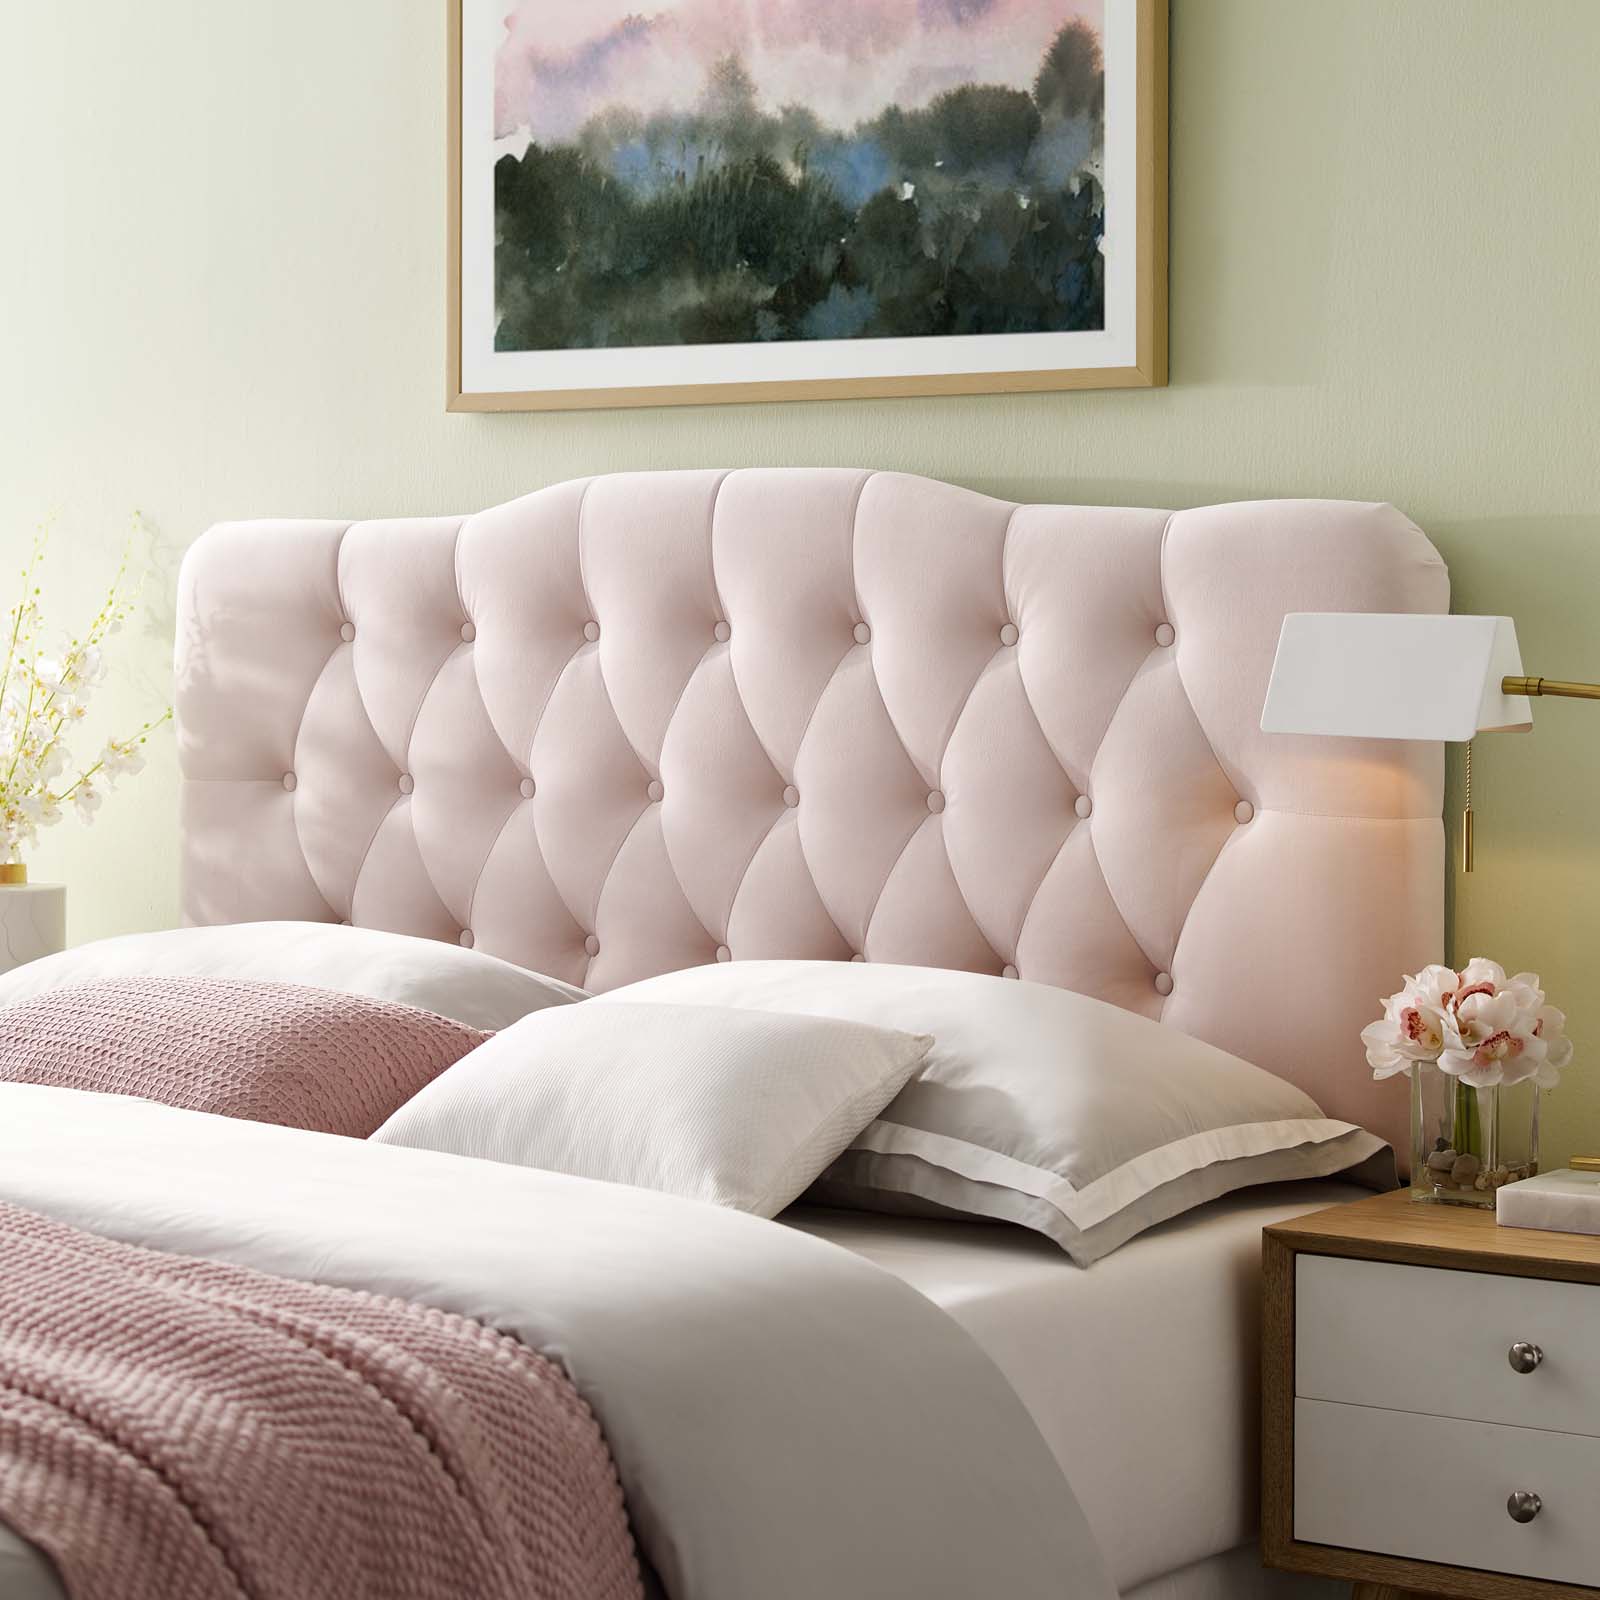 Những cô nàng yêu thích nhẹ nhàng, nữ tính chắc chắn không thể bỏ qua thiết kế tấm ván đầu giường màu hồng pastel siêu ngọt ngào này.